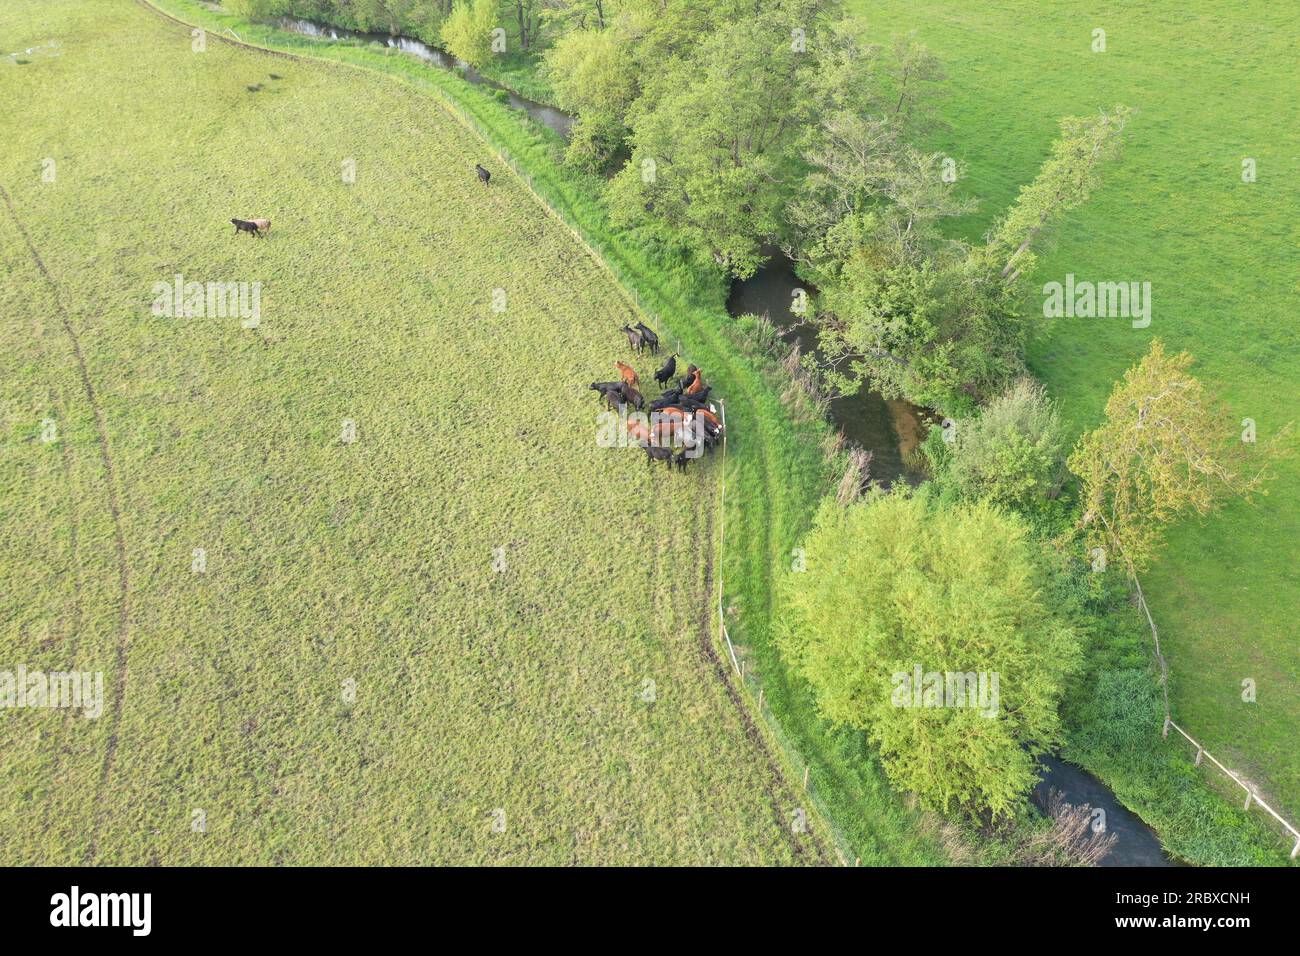 Drohnenperspektive über grünen Feldern von Hook, Hampshire, England. Die Bilder zeigen einen klaren Himmel und grüne Felder, die sich an der Horizontlinie treffen. Stockfoto